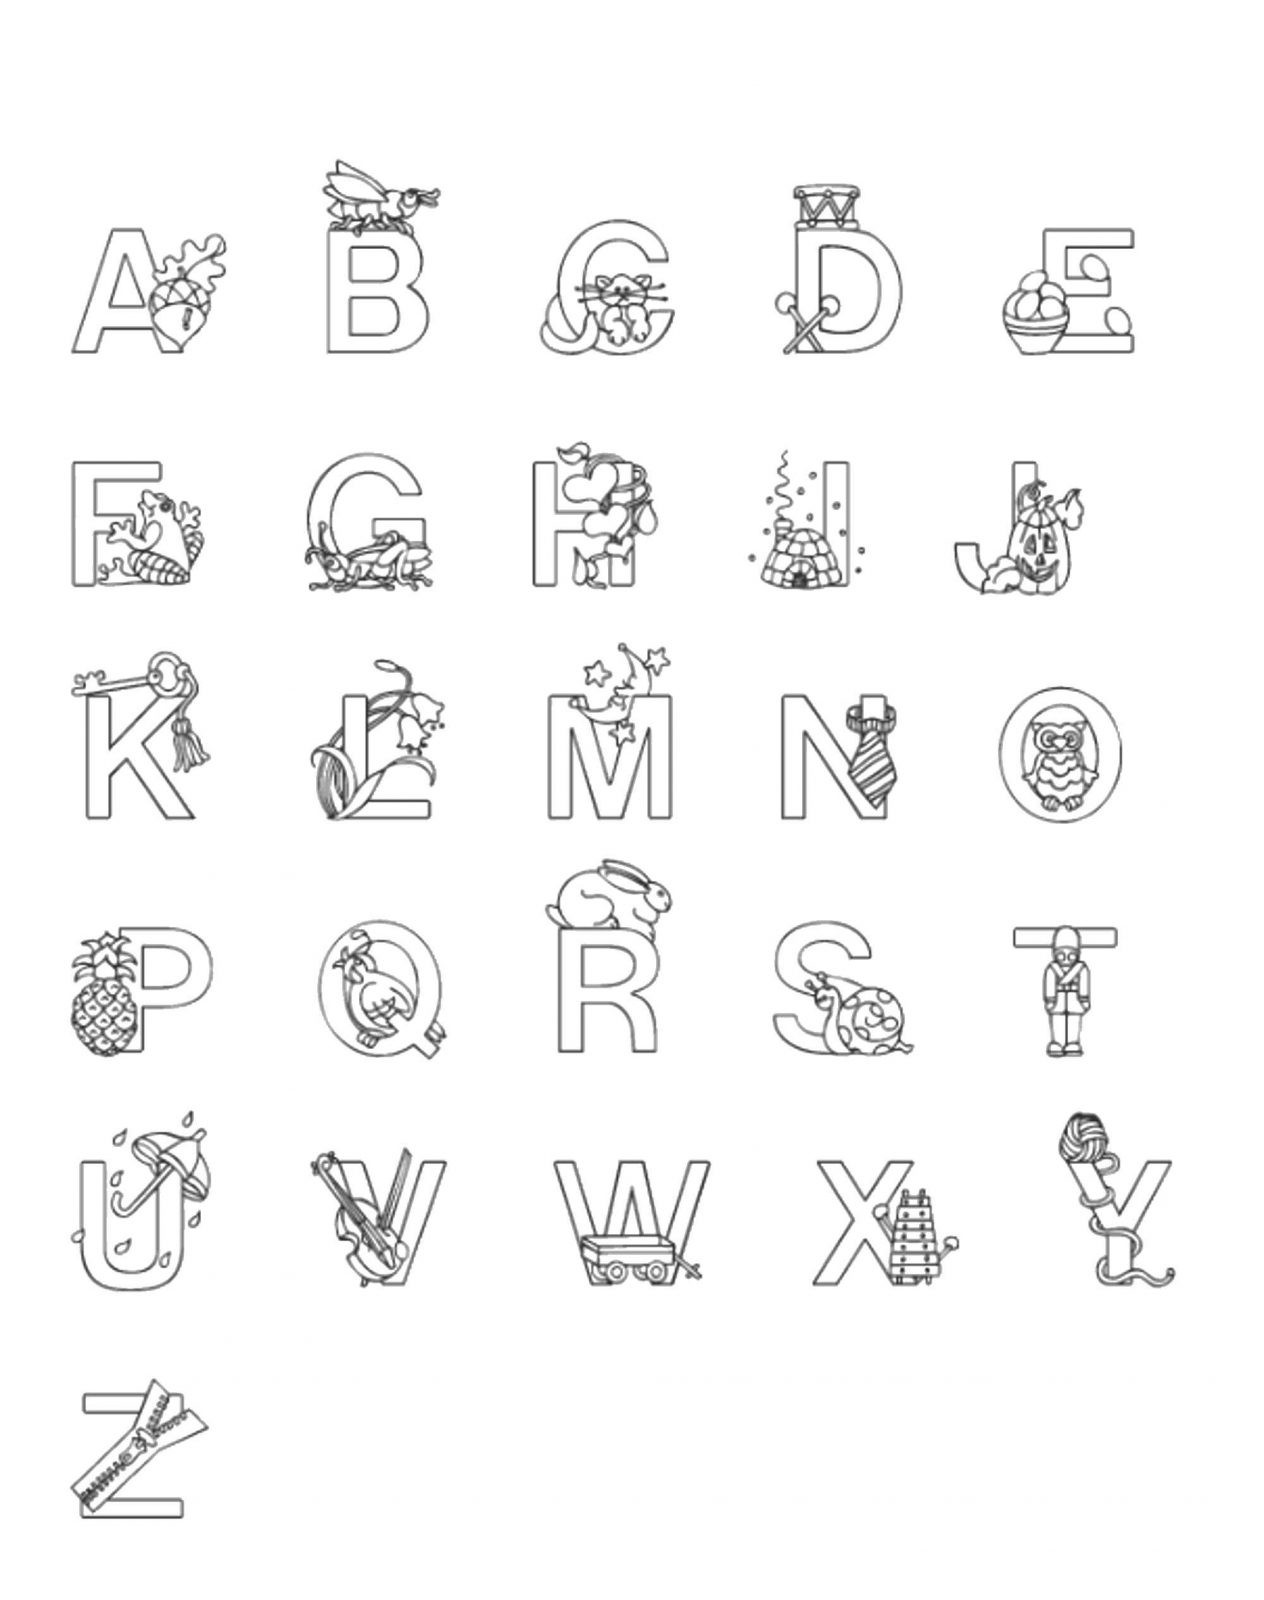 Красочная страница-раскраска «алфавит лора» для детей, чтобы развить их понимание